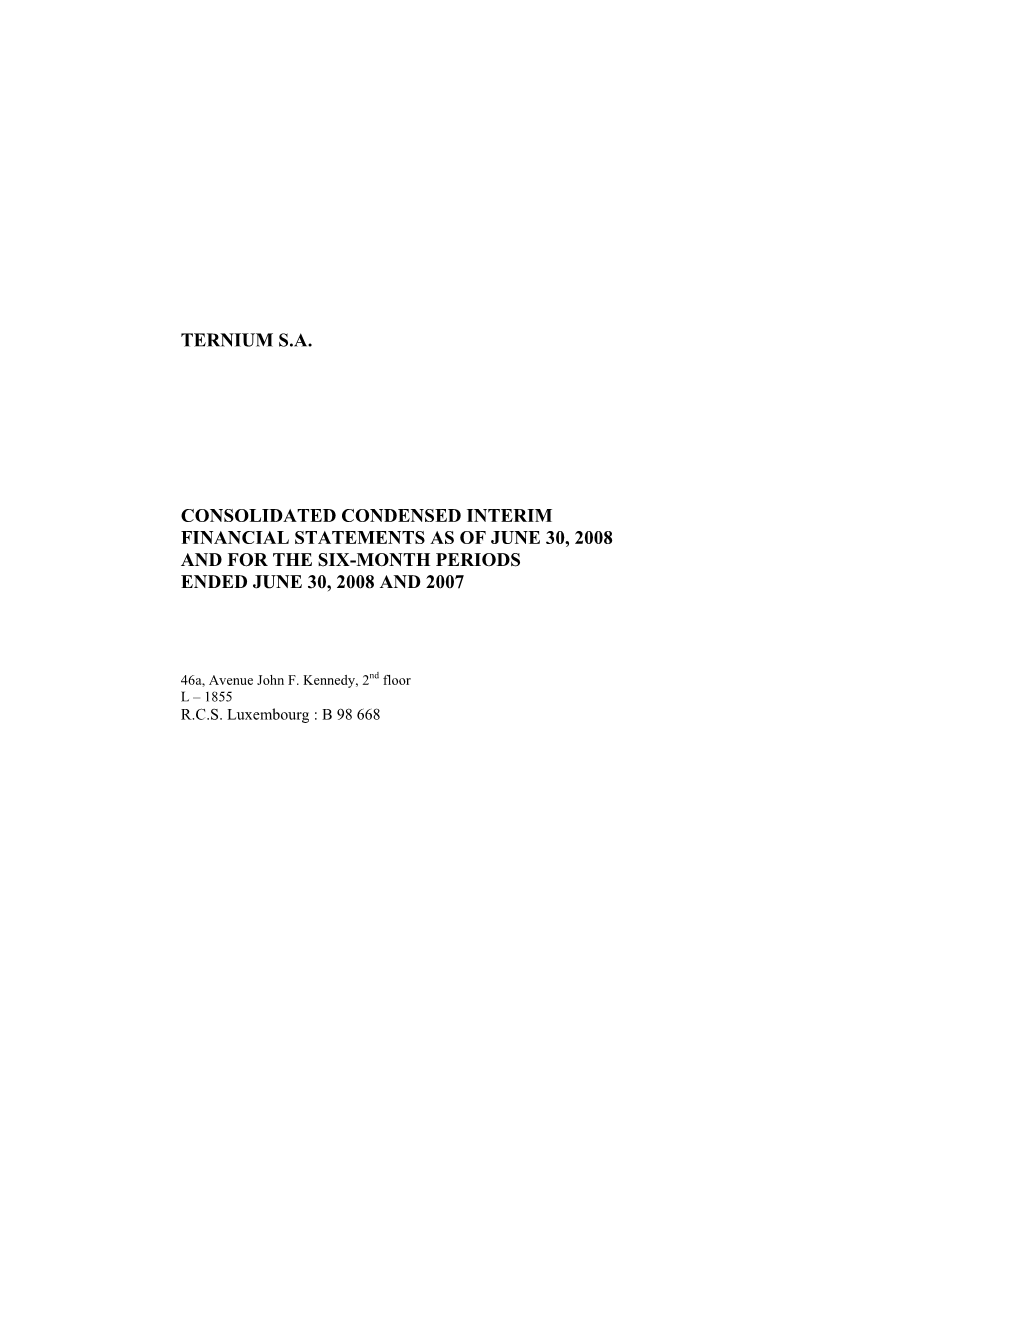 Ternium S.A. Consolidated Condensed Interim